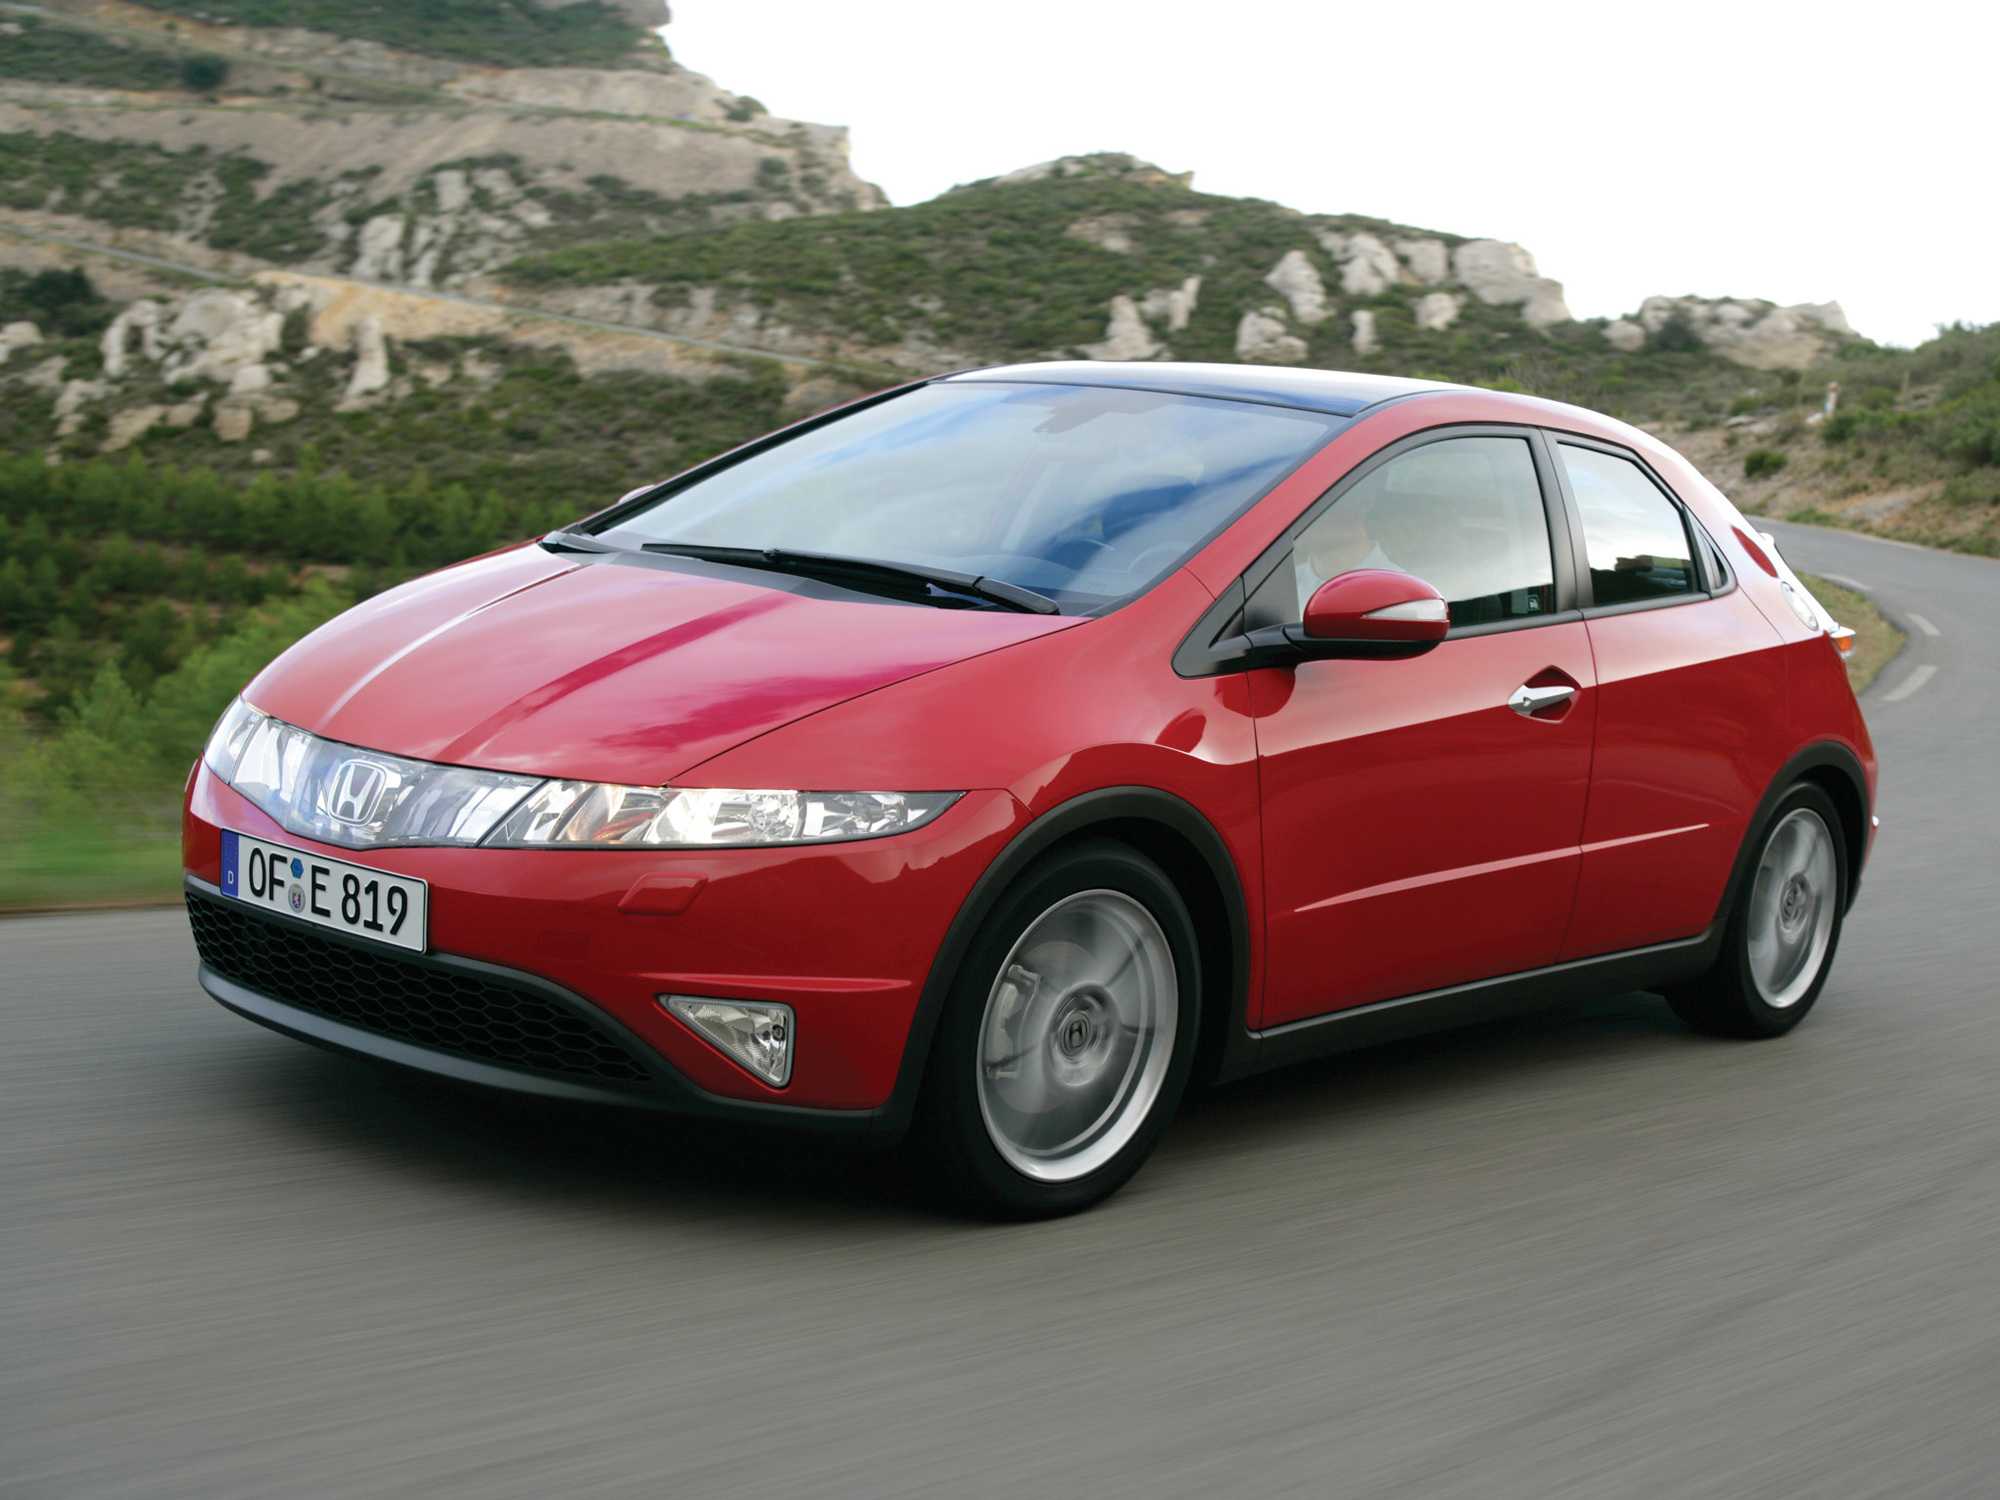 Возможные проблемы с Honda Civic – на основе отзывов автовладельцев: двигатель трансмиссия кузов ходовая часть рулевое управление салон